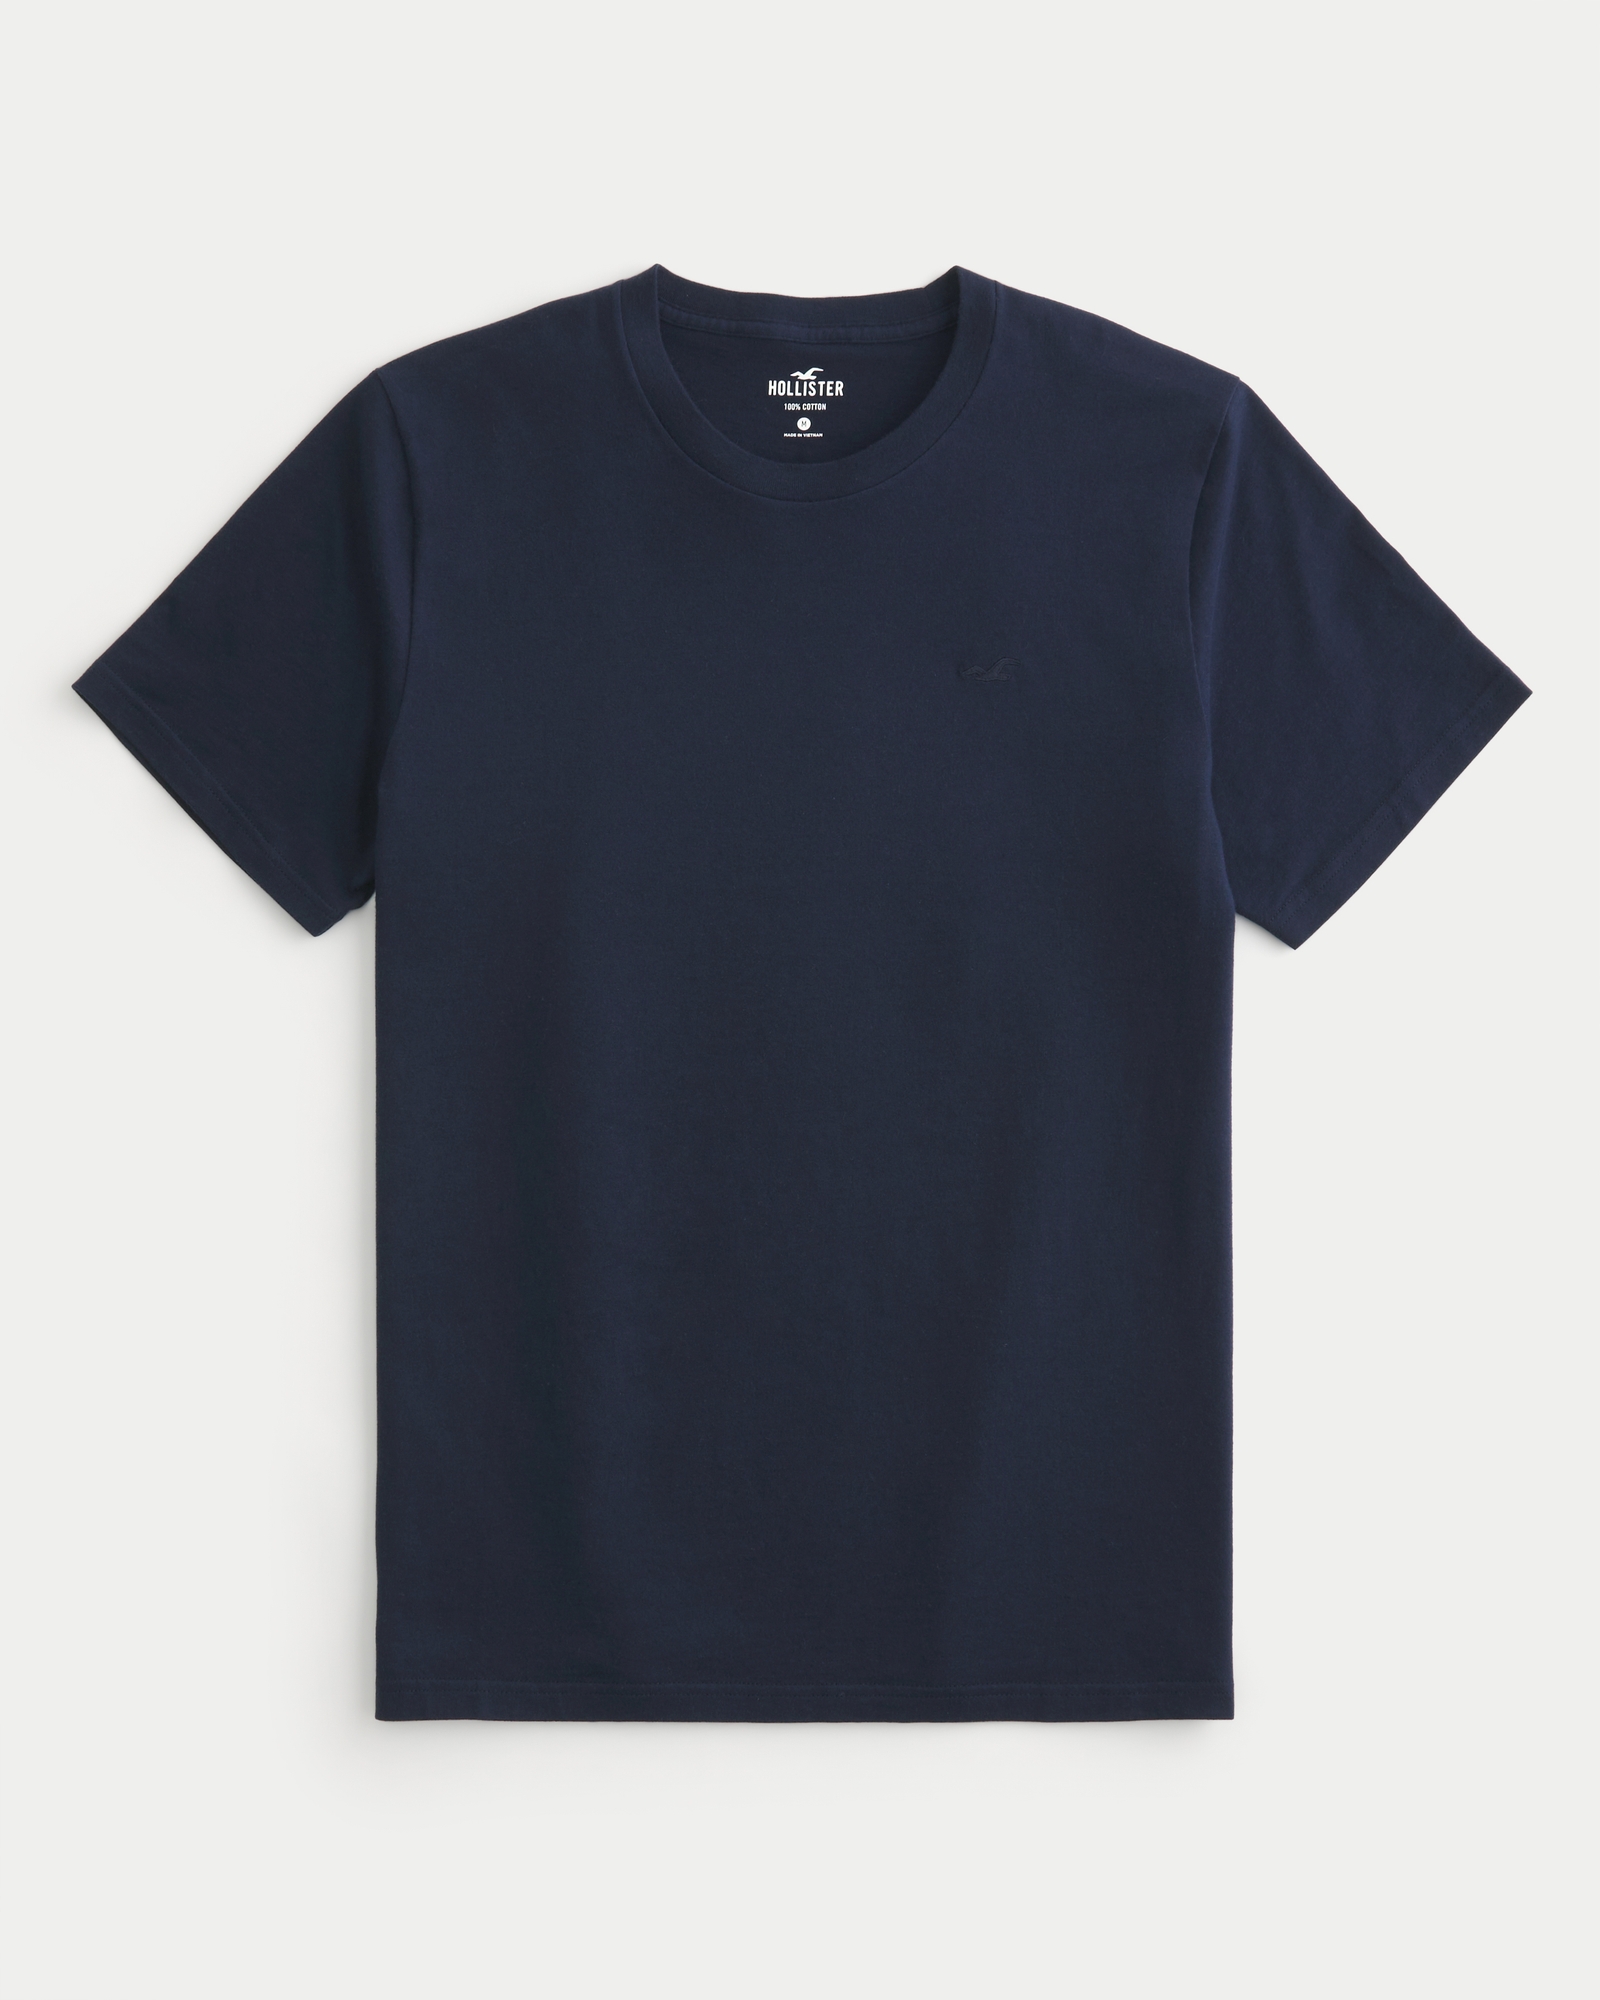 Hollister T-Shirt Women's Size XS Navy Blue Short Sleeve Crewneck *Brand  Print*